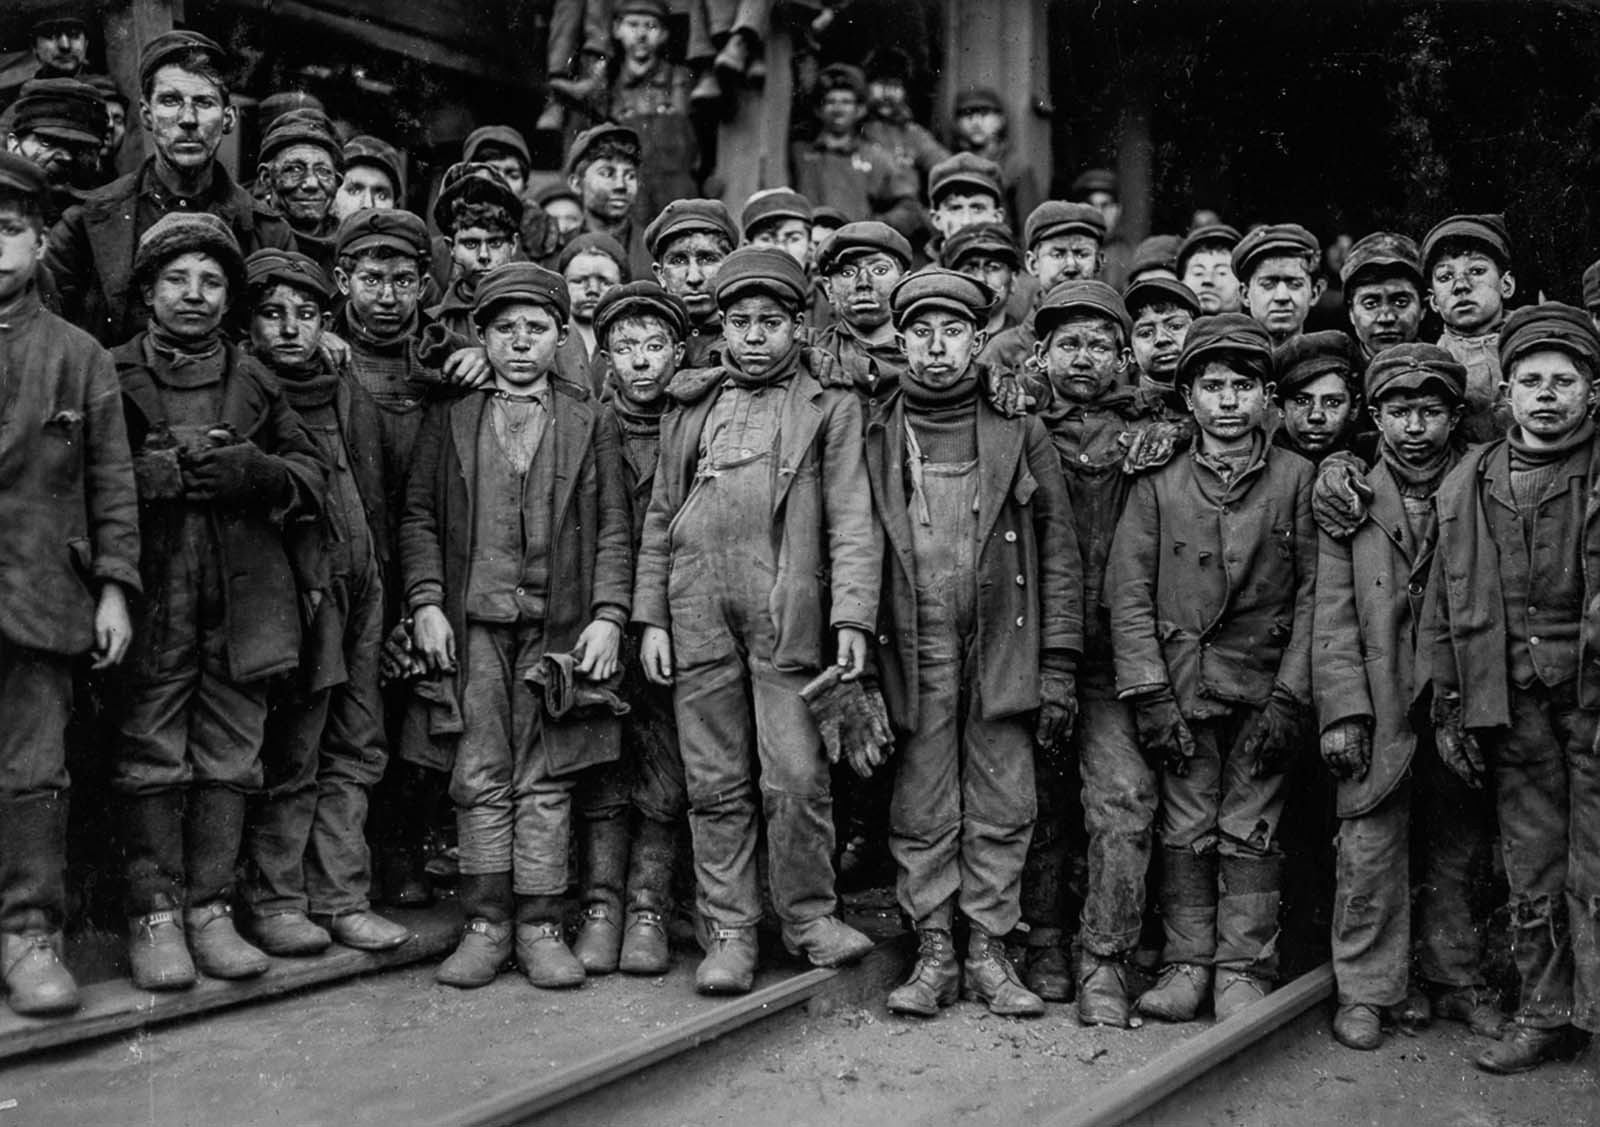 Breaker boys employed by the Pennsylvania Coal Company, 1911